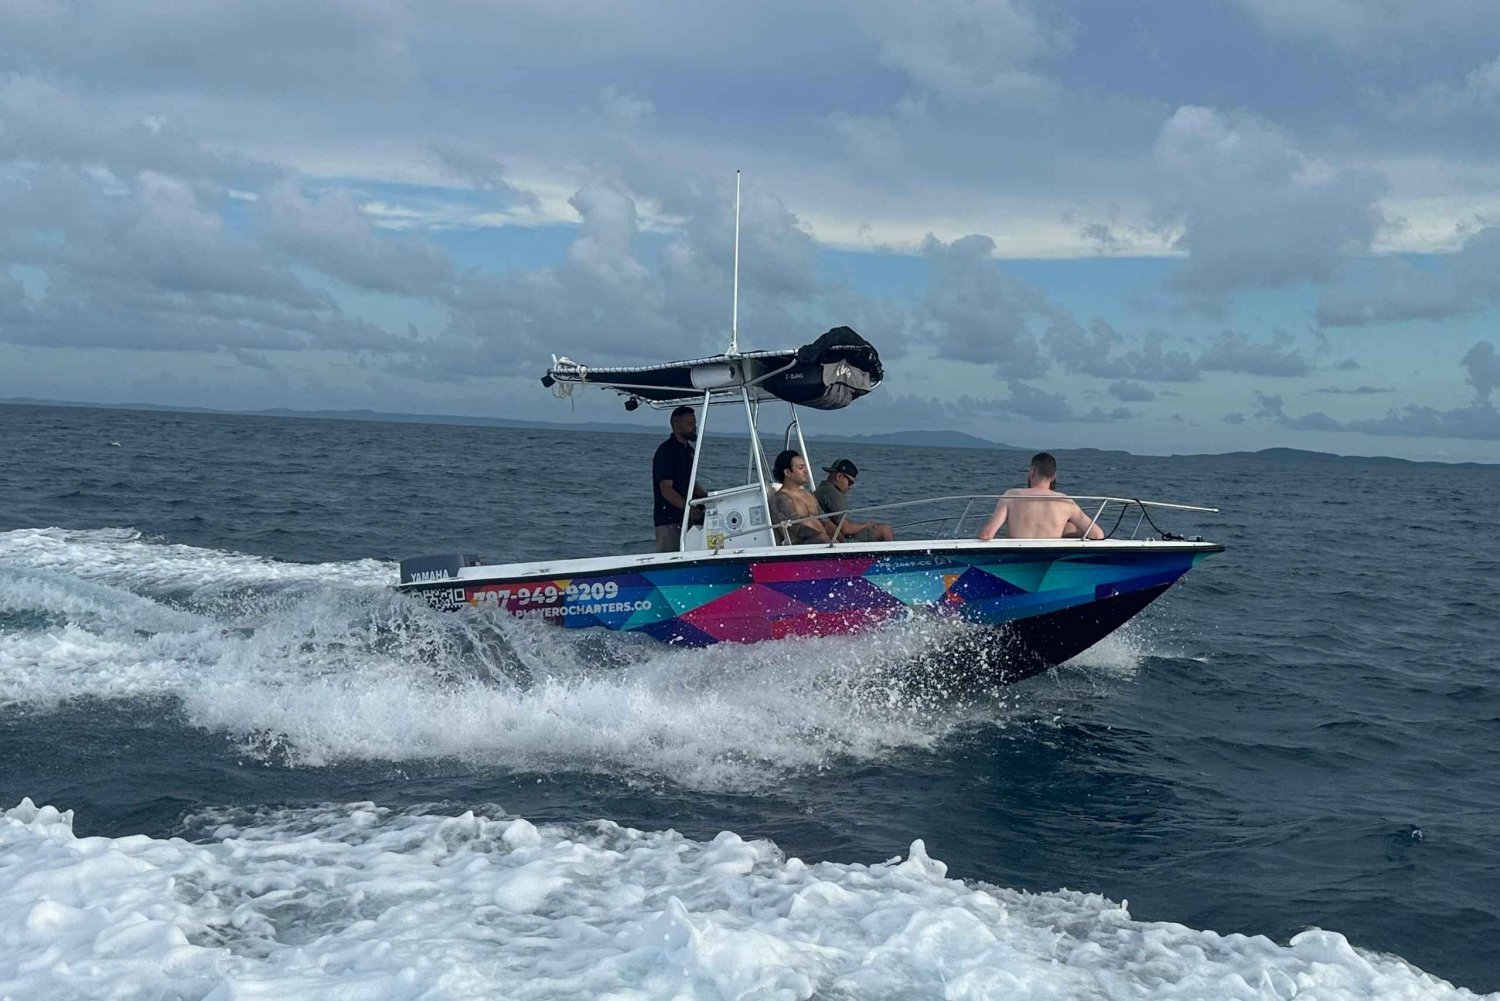 VIP 21' Boat with Captain & Crew in Fajardo Area